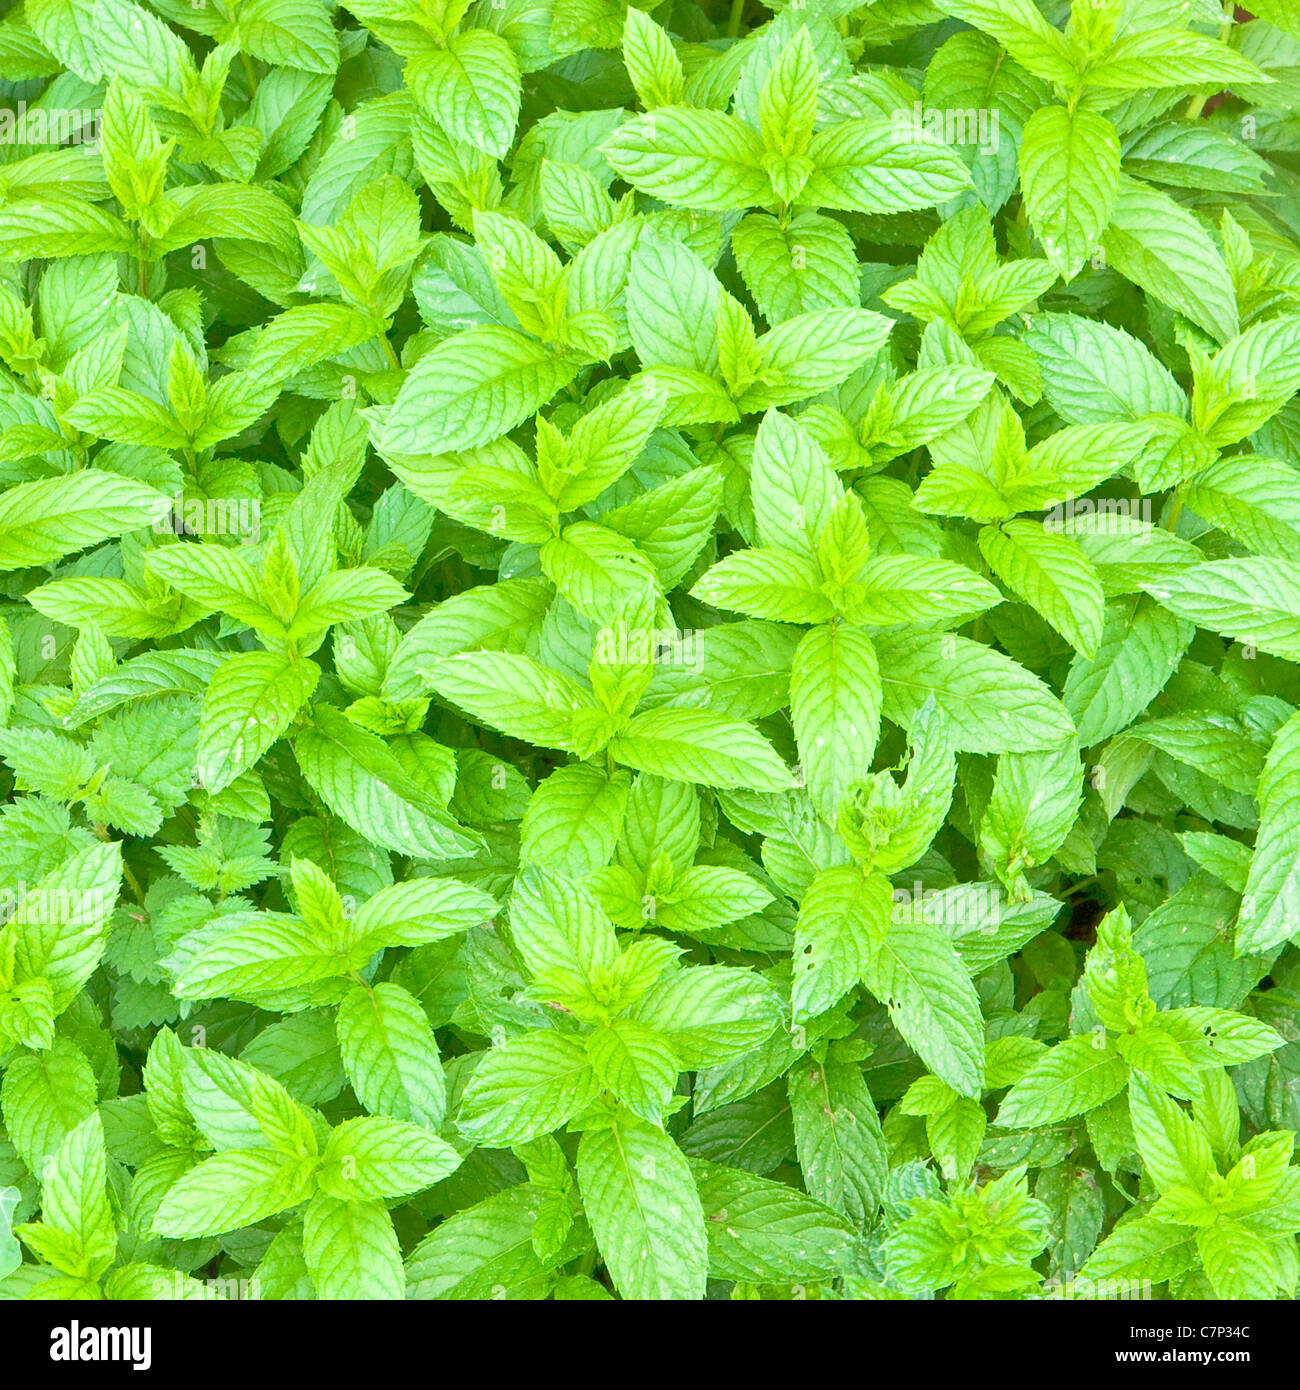 Lovely fresh background image of english garden mint Stock Photo